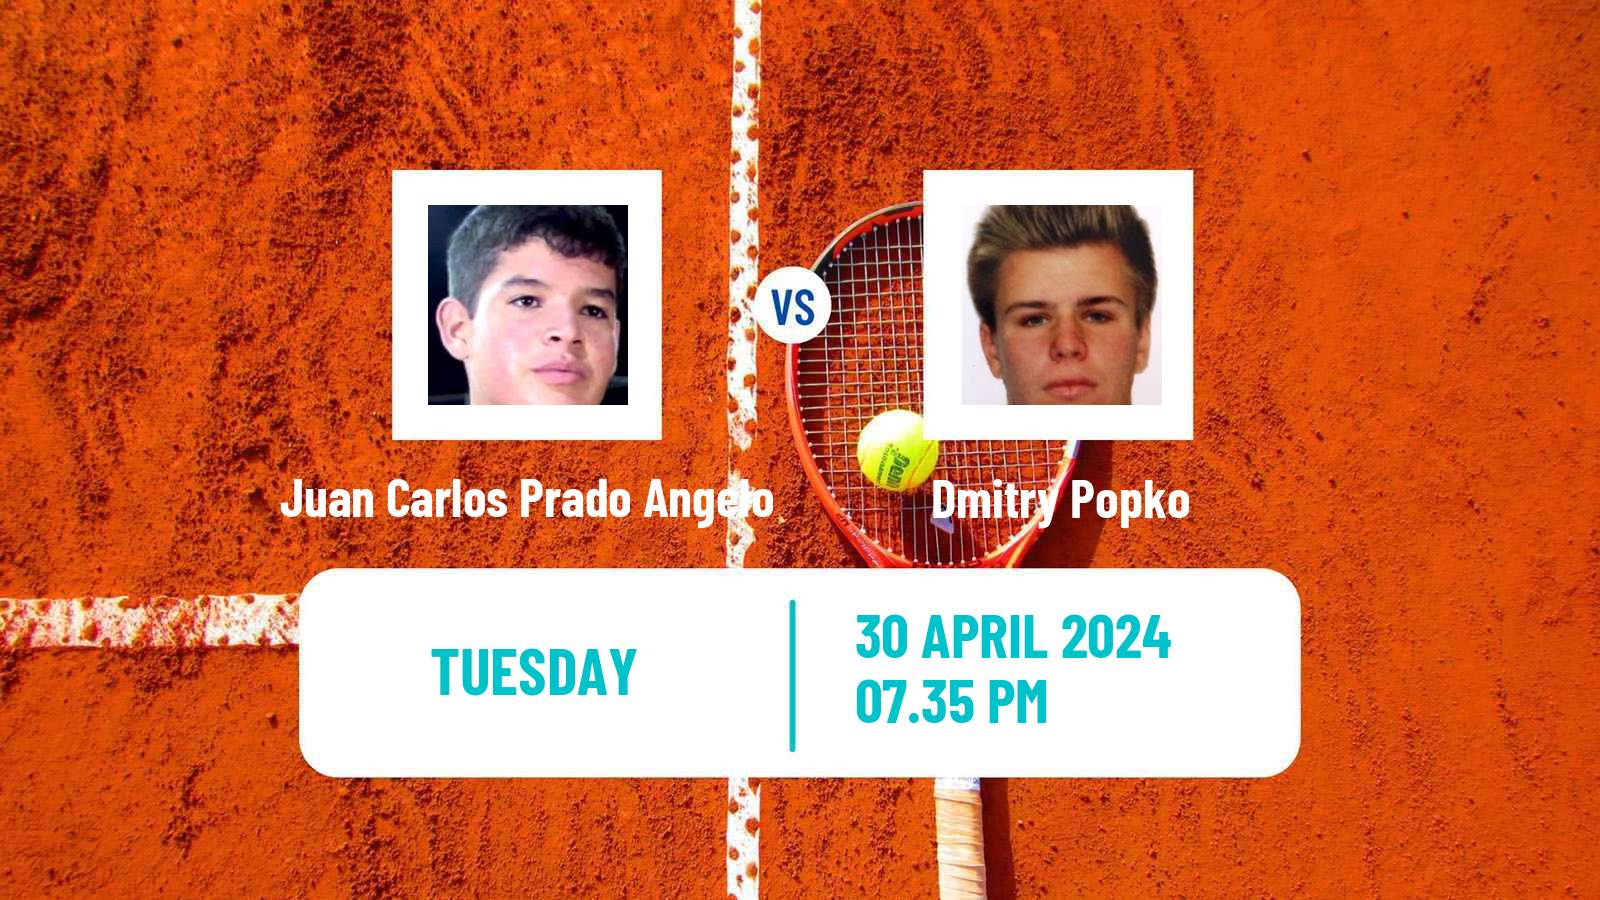 Tennis Porto Alegre Challenger Men Juan Carlos Prado Angelo - Dmitry Popko